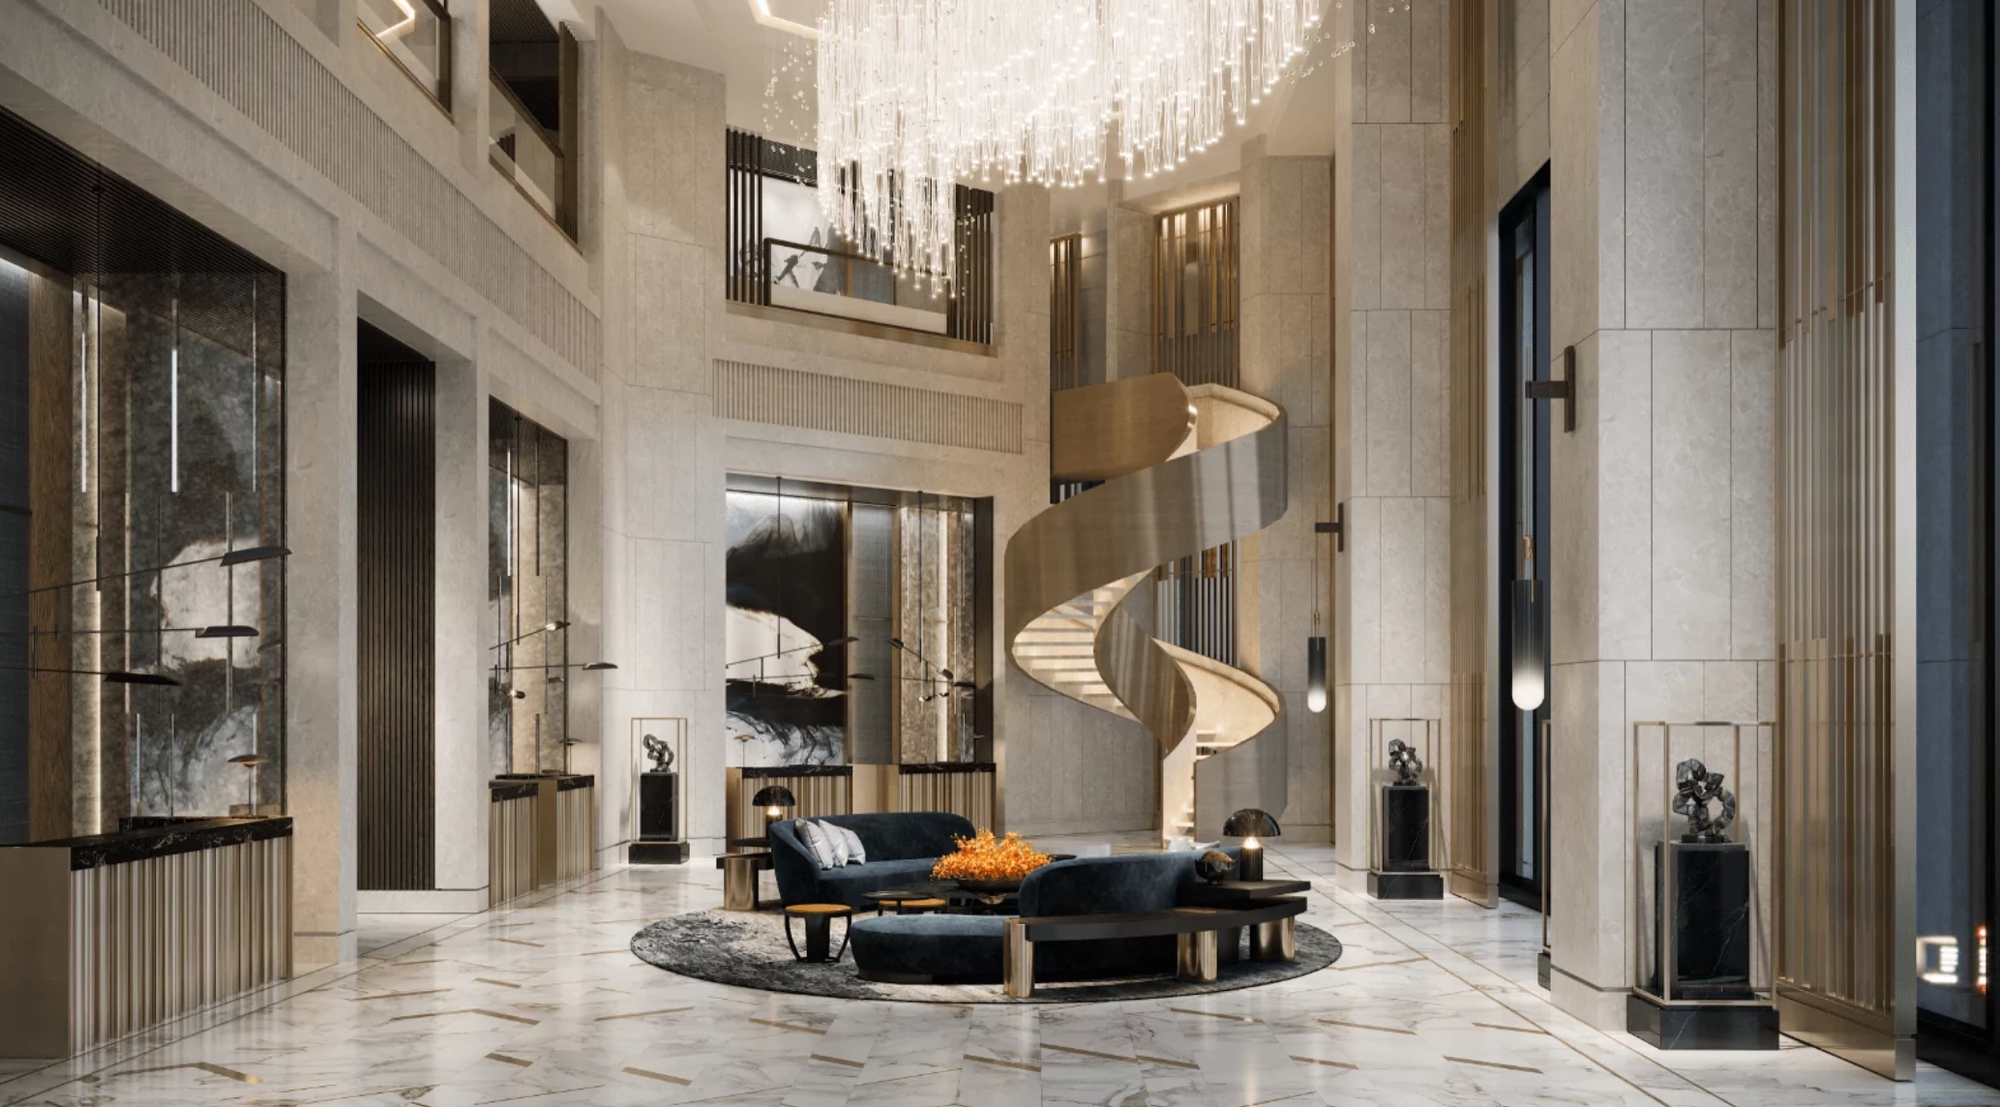 Chuyện chưa kể về Kempinski Hotel – Thương hiệu khách sạn xa xỉ, là lựa chọn kín tiếng của hoàng gia và giới siêu giàu trên thế giới- Ảnh 5.